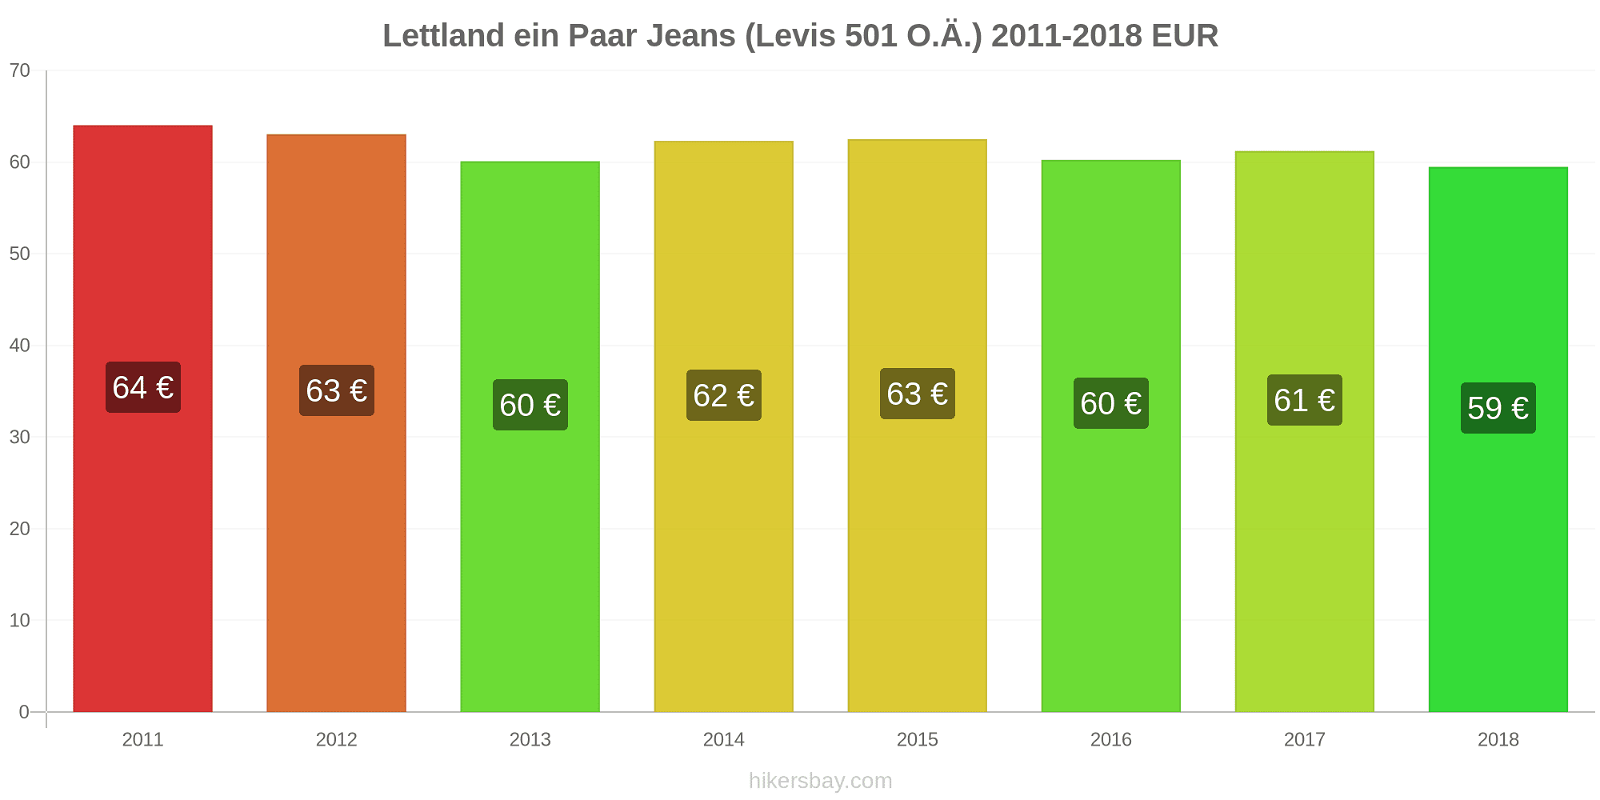 Lettland Preisänderungen 1 Paar Jeans (Levis 501 oder ähnlich) hikersbay.com